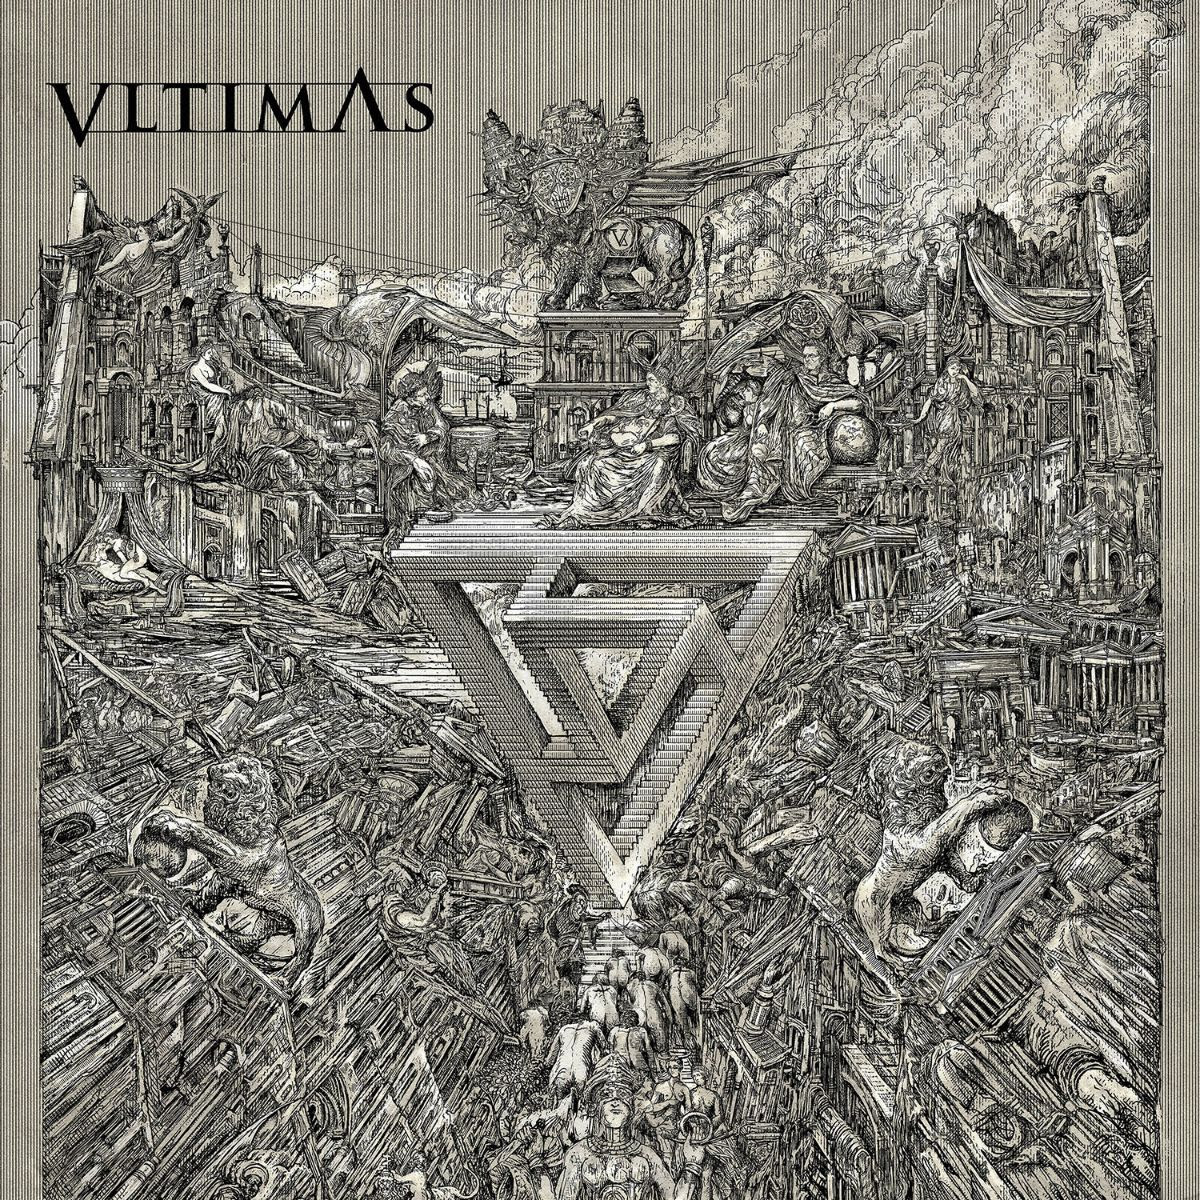 Cover-artwork-vltimas-Bielak